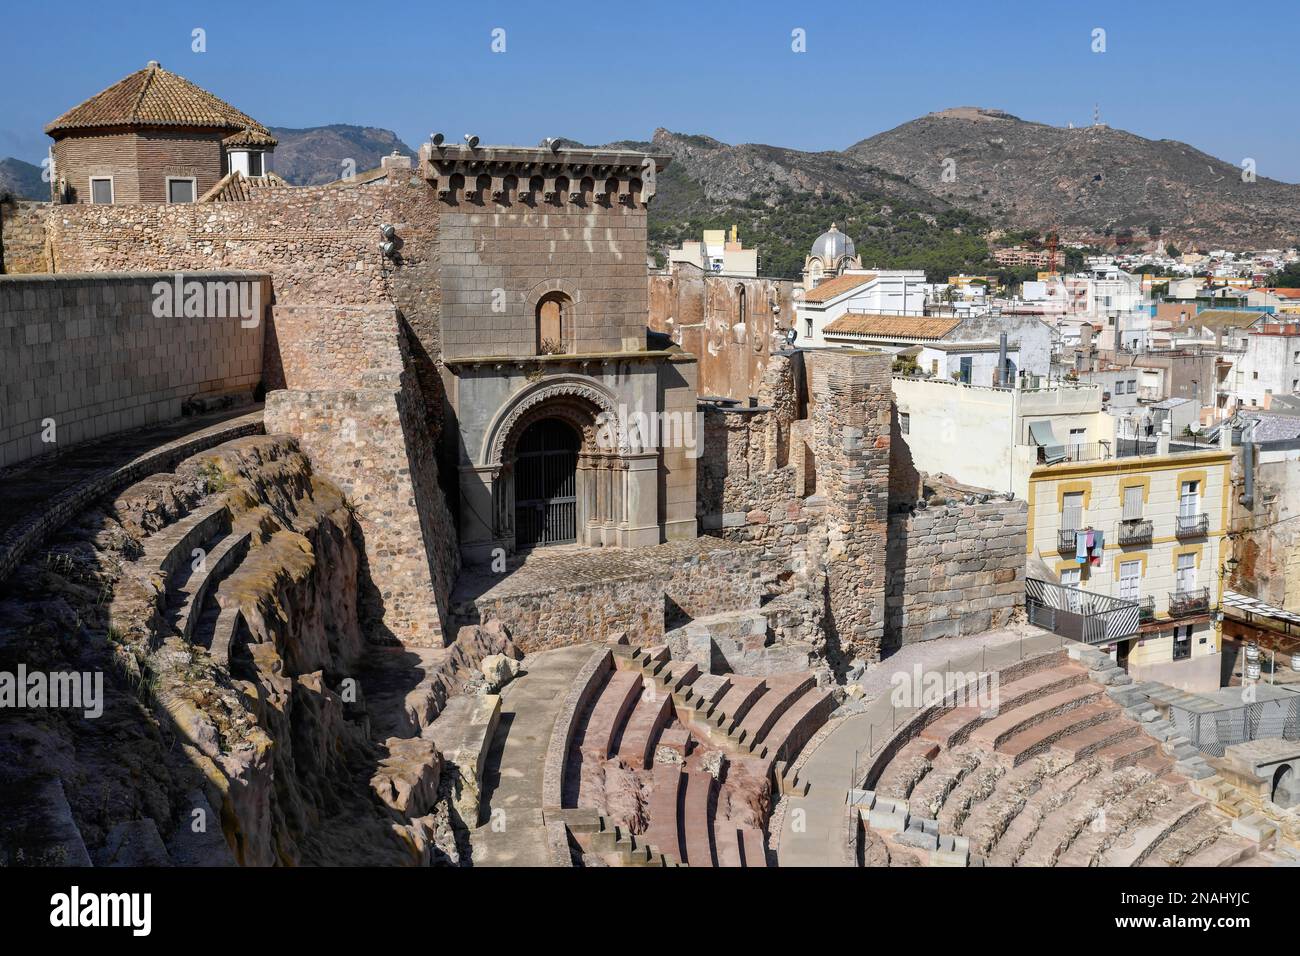 Teatro Romano, Roman amphitheater, in the old town of Cartagena, Region of Murcia, Spain Stock Photo